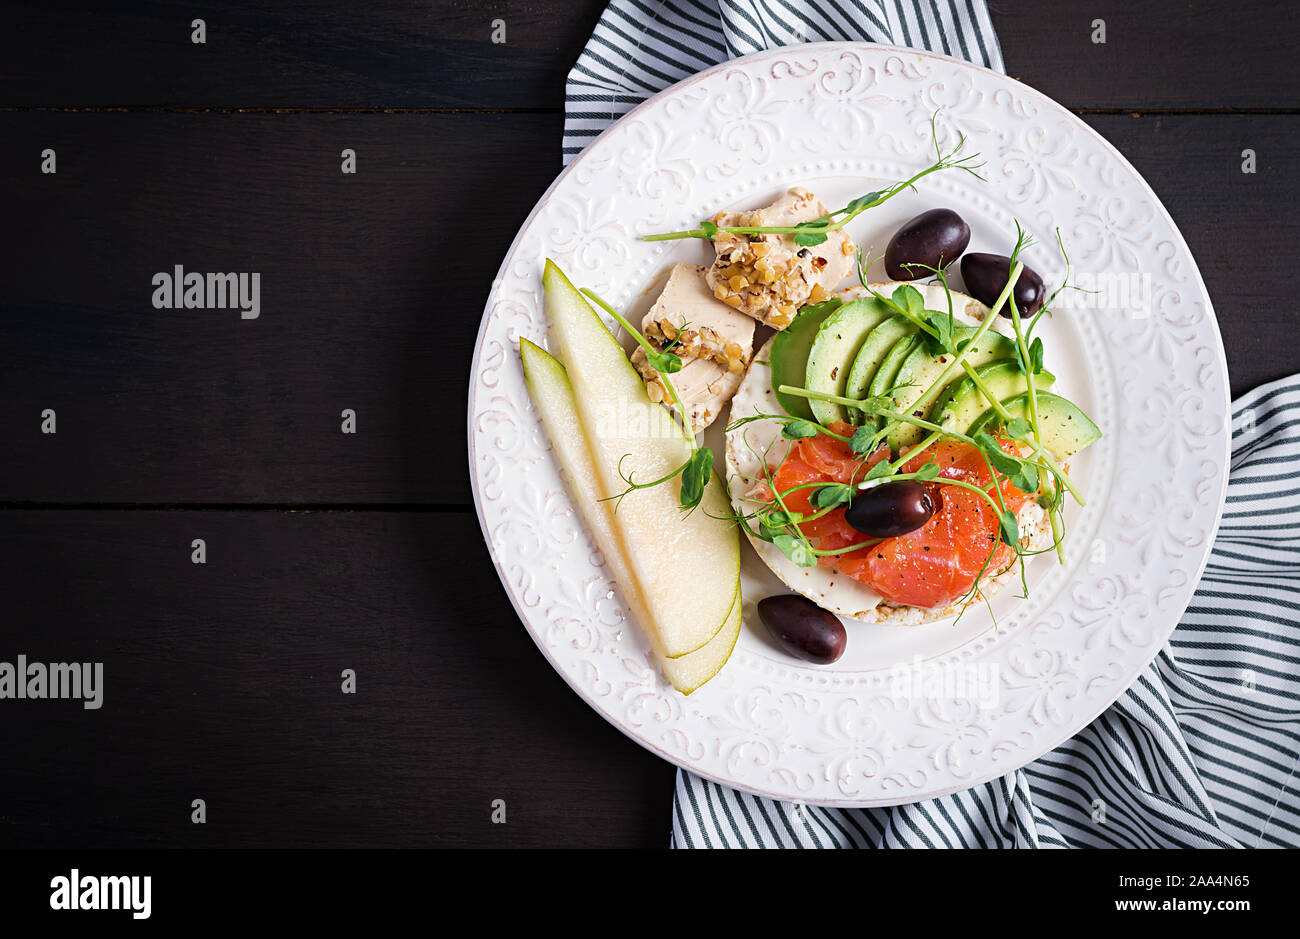 Gesundes Frühstück. Sandwiches mit Frischkäse, Lachs, Avocado und Scheibe Birne an der Platte. Ansicht von oben, Overhead Stockfoto